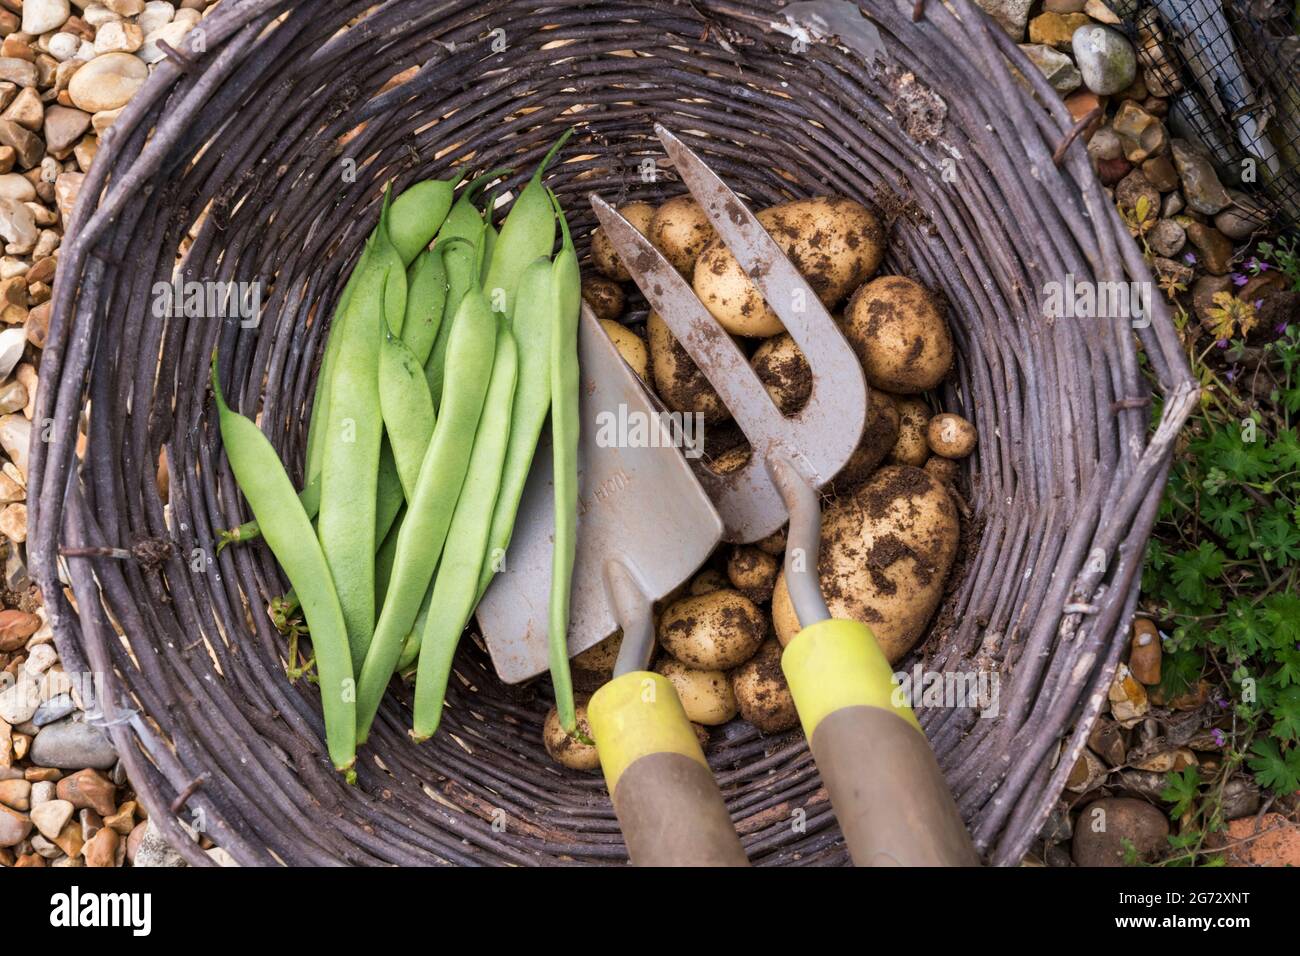 Ein Weidenkorb mit frischen Produkten aus dem Garten - hausgemachte  Kartoffeln und französische Bohnen Stockfotografie - Alamy